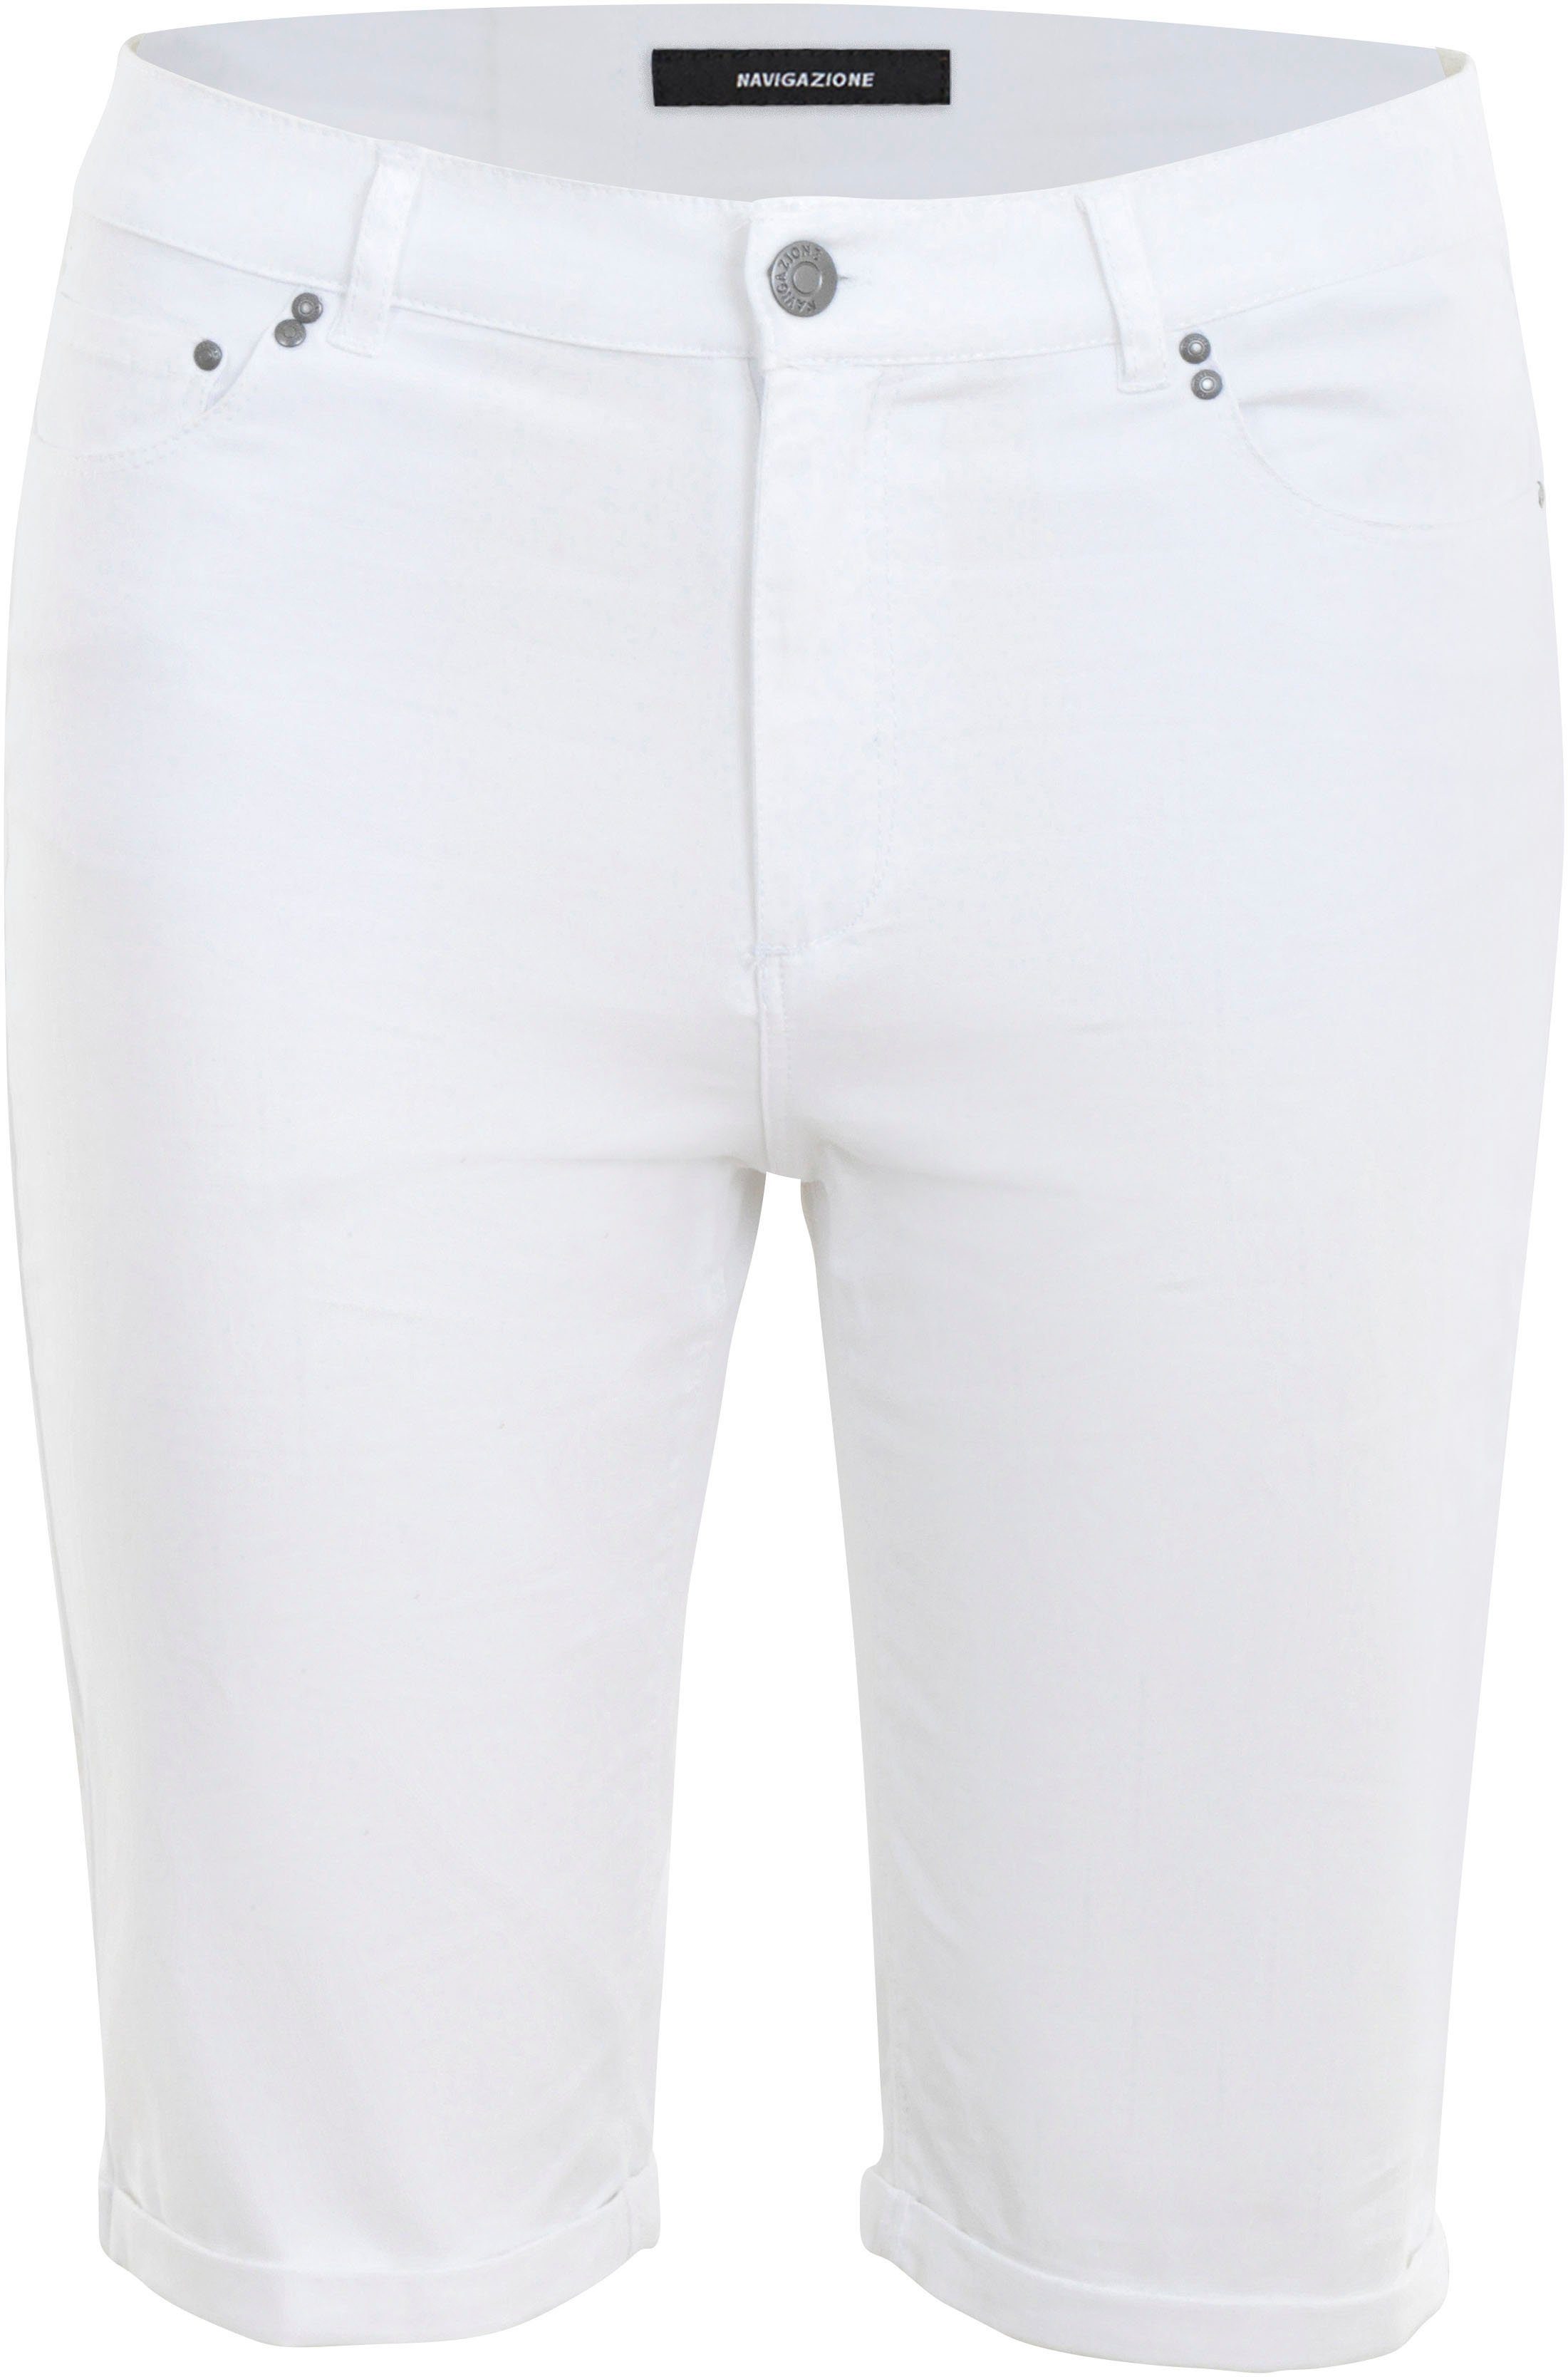 Form 5-Pocket weiß Shorts in NAVIGAZIONE